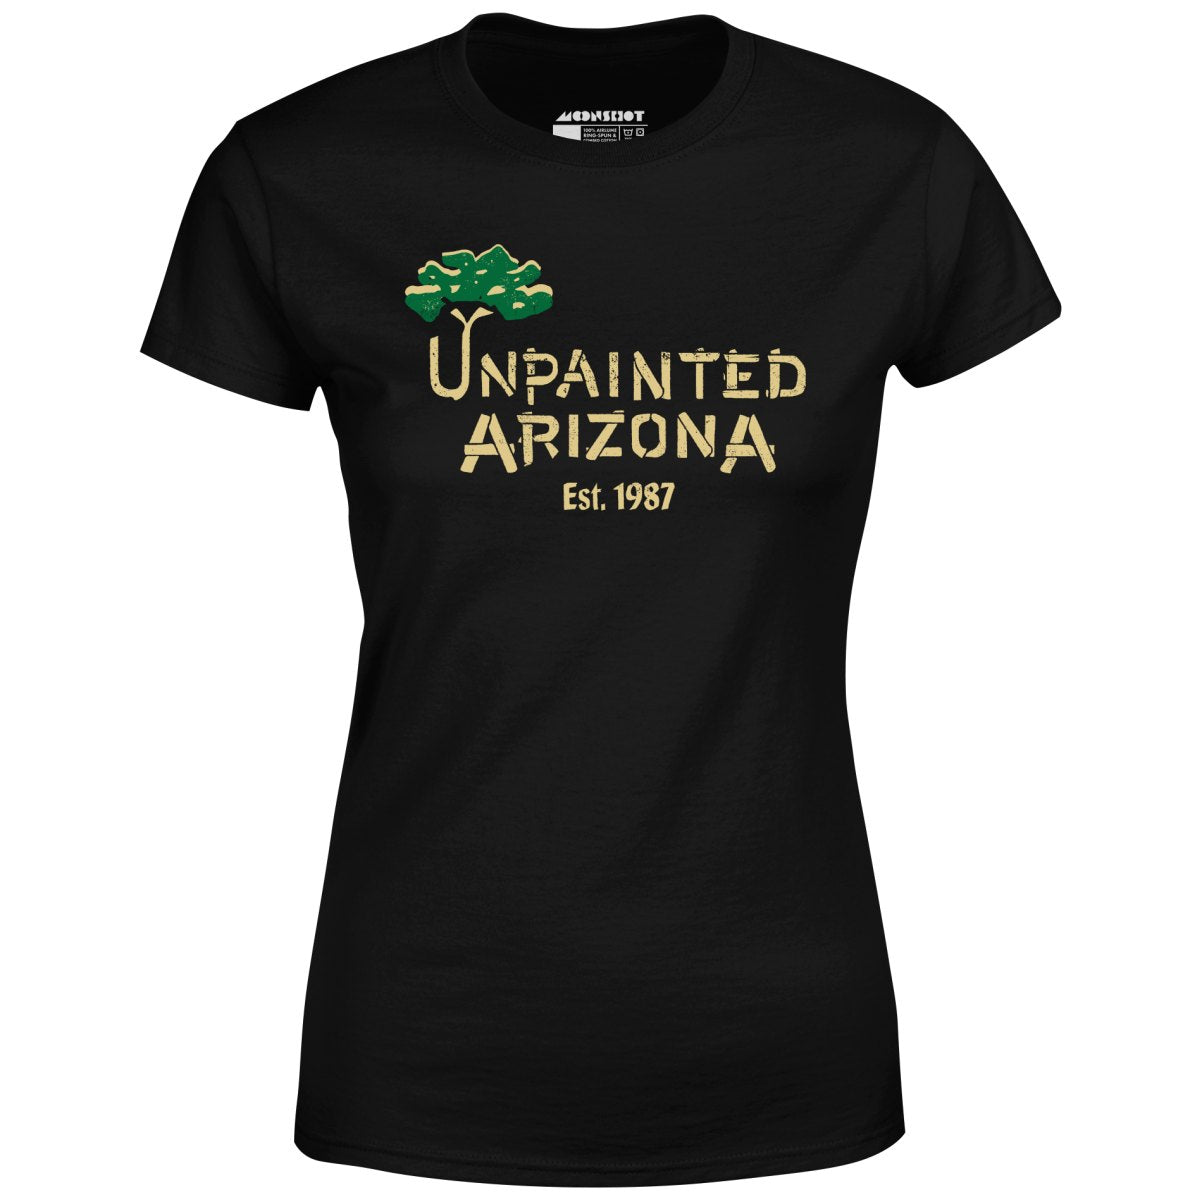 Unpainted Arizona - Women's T-Shirt